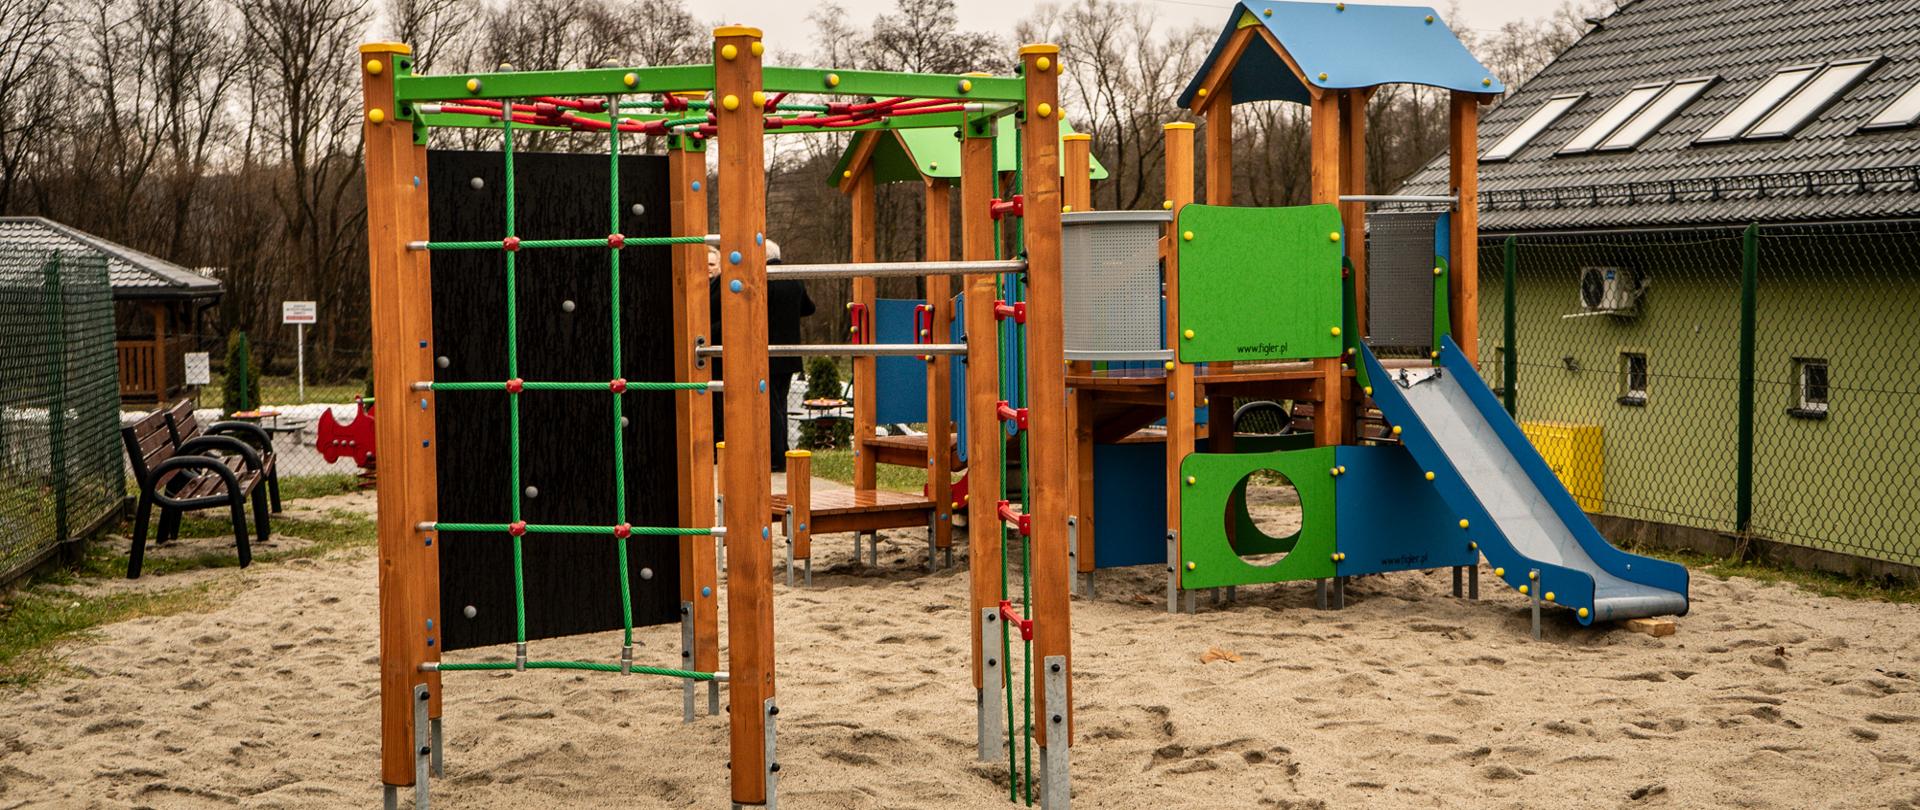 Na zdjęciu przedstawiony został plac zabaw na którym znajdują się sprzęty zabawowe dla dzieci takie jak zjeżdżalnia, ścianka wspinaczkowa,sprzęty te znajdują się na powierzchni z piasku. 